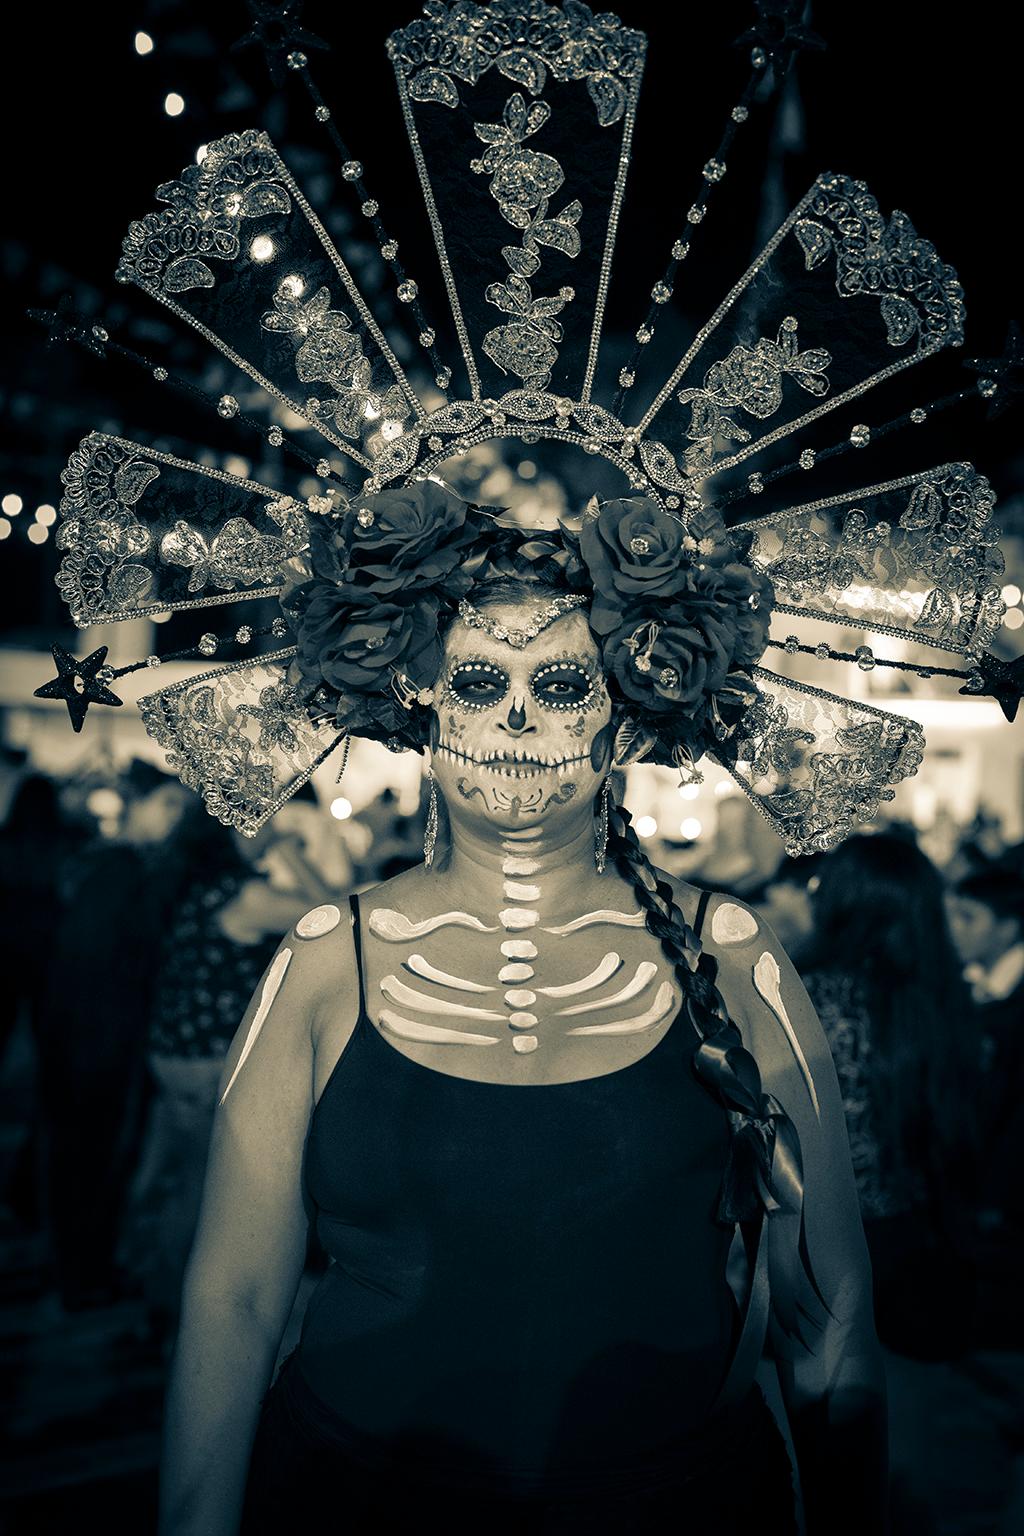  Cosmo Condina Portrait Photograph - Death comes to you, Day of the Dead, Dia de los Muertos, Isla Mujeres, Mexico, 2